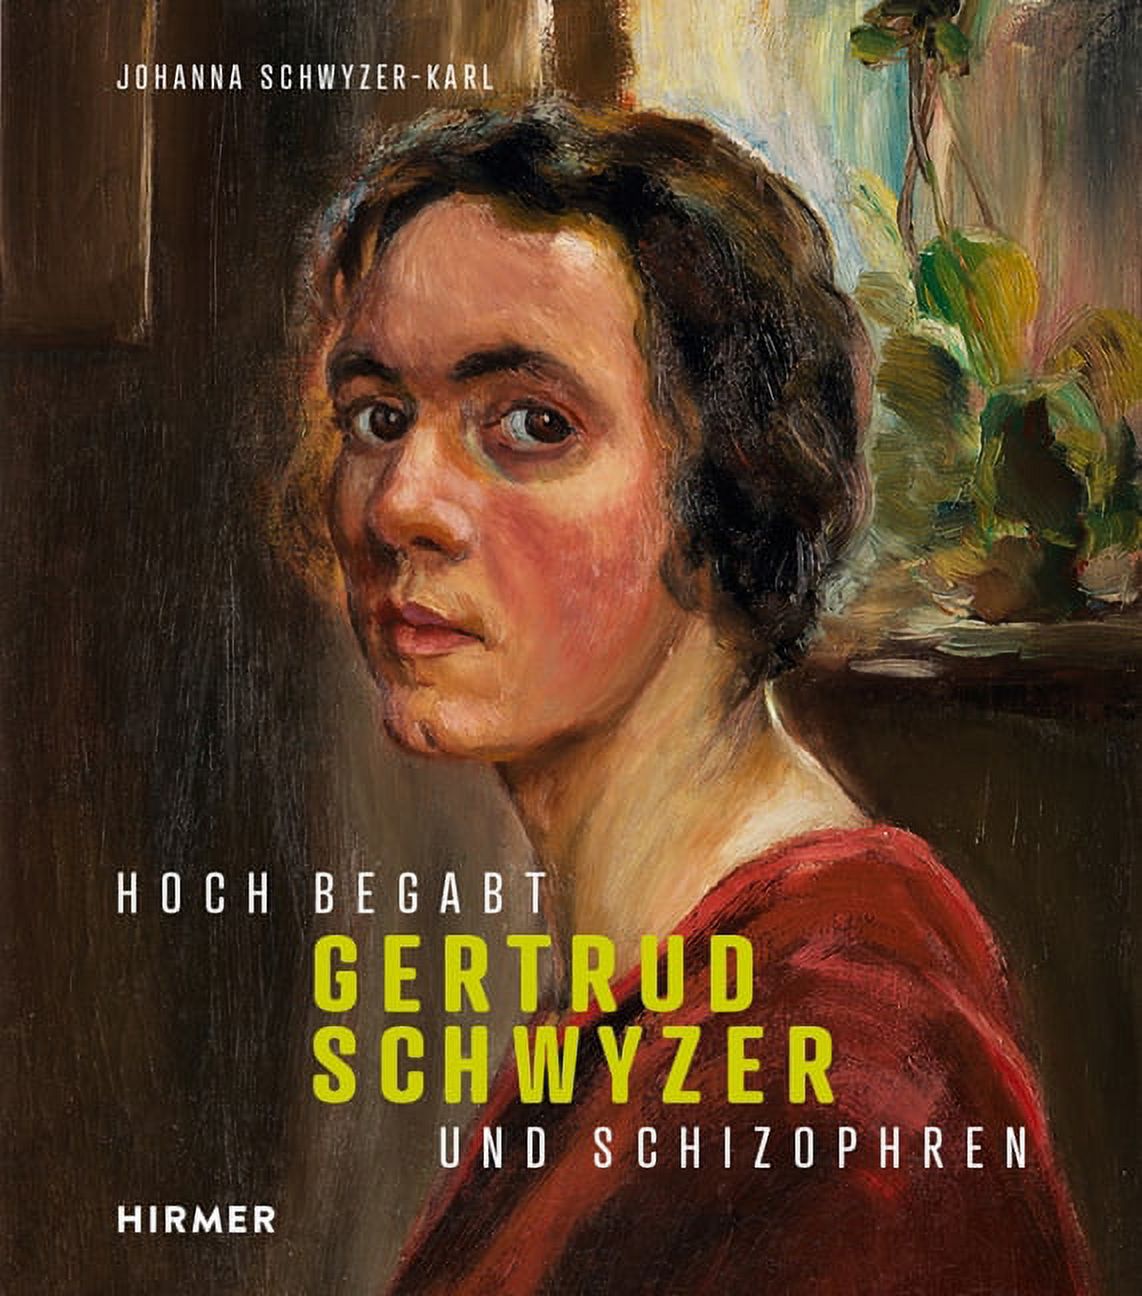 Gertrud Schwyzer: Hoch Begabt Und Schizophren (Hardcover) - image 1 of 1